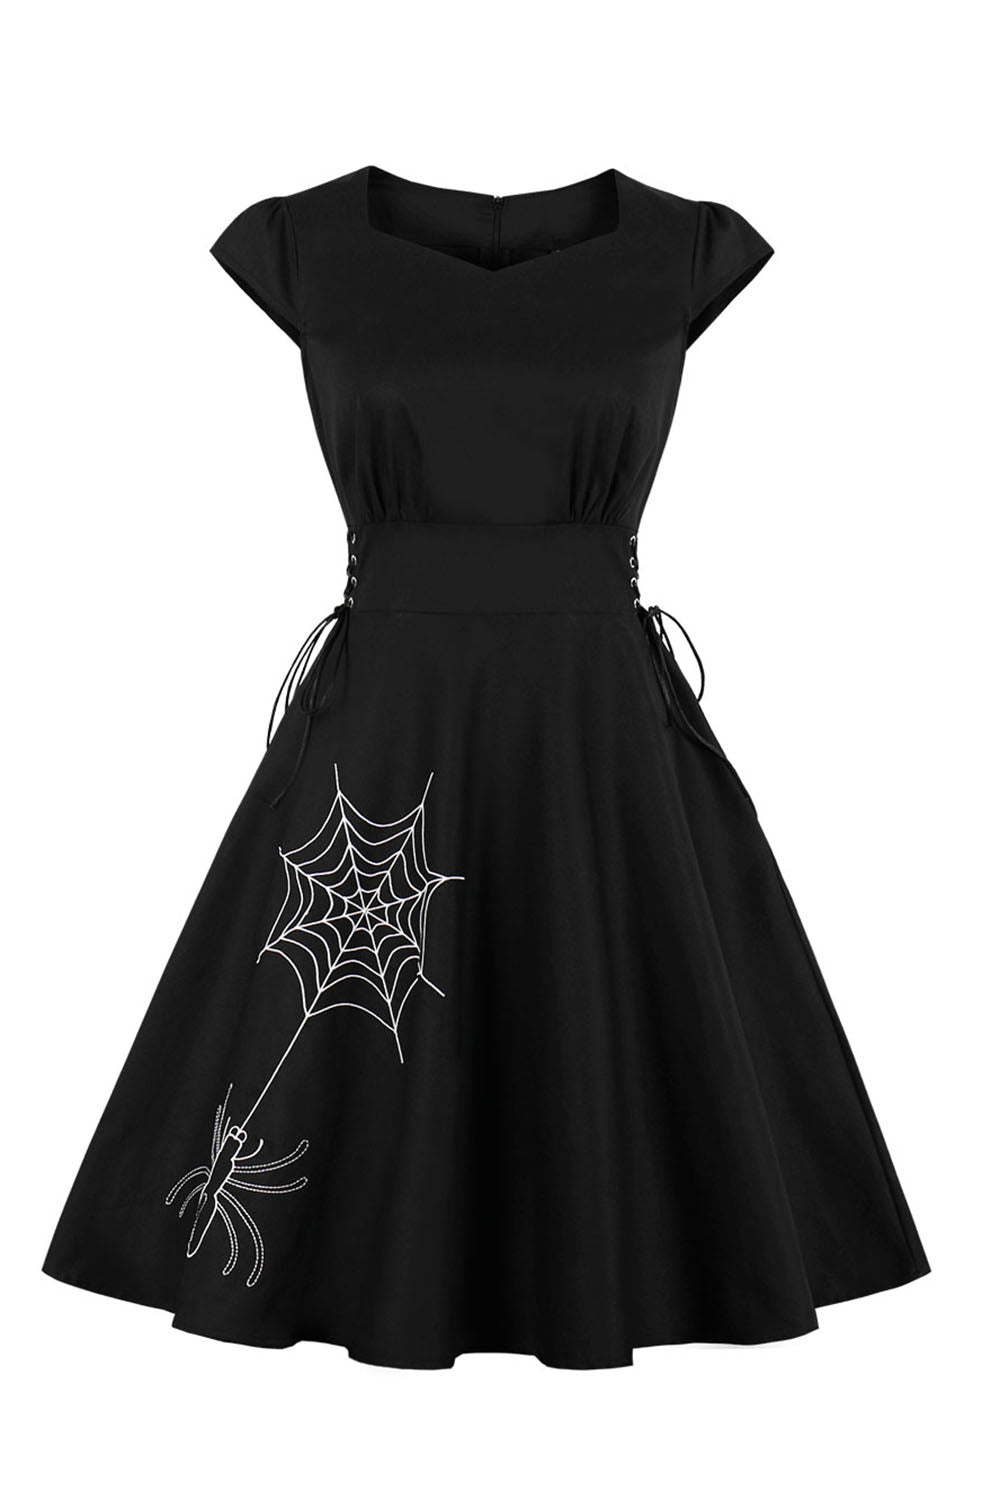 Vestido de Halloween vintage de renda preta